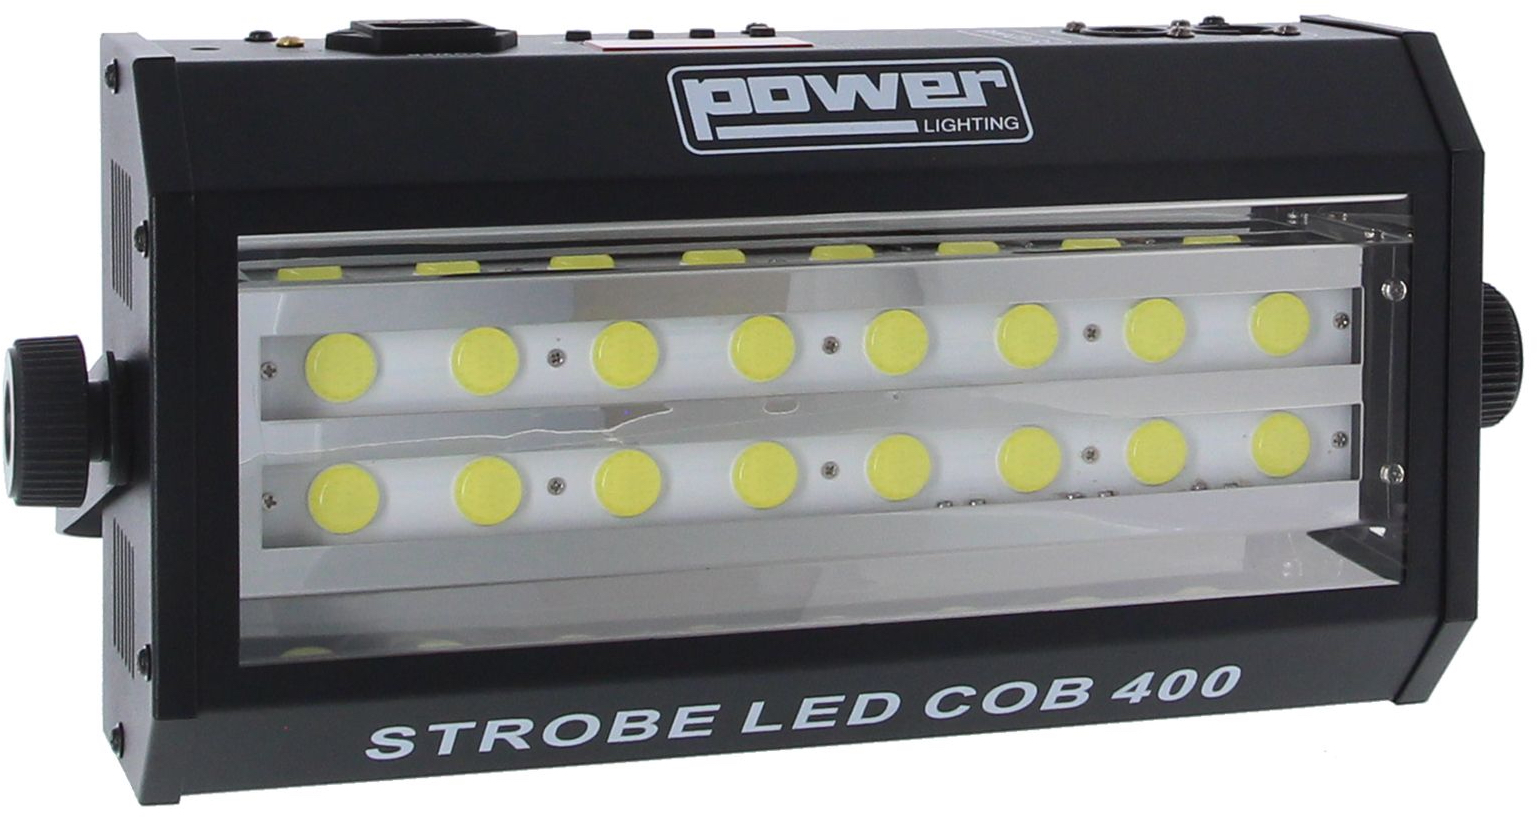 Power Lighting Strobe Led Cob 400 - Stroboskop - Variation 1